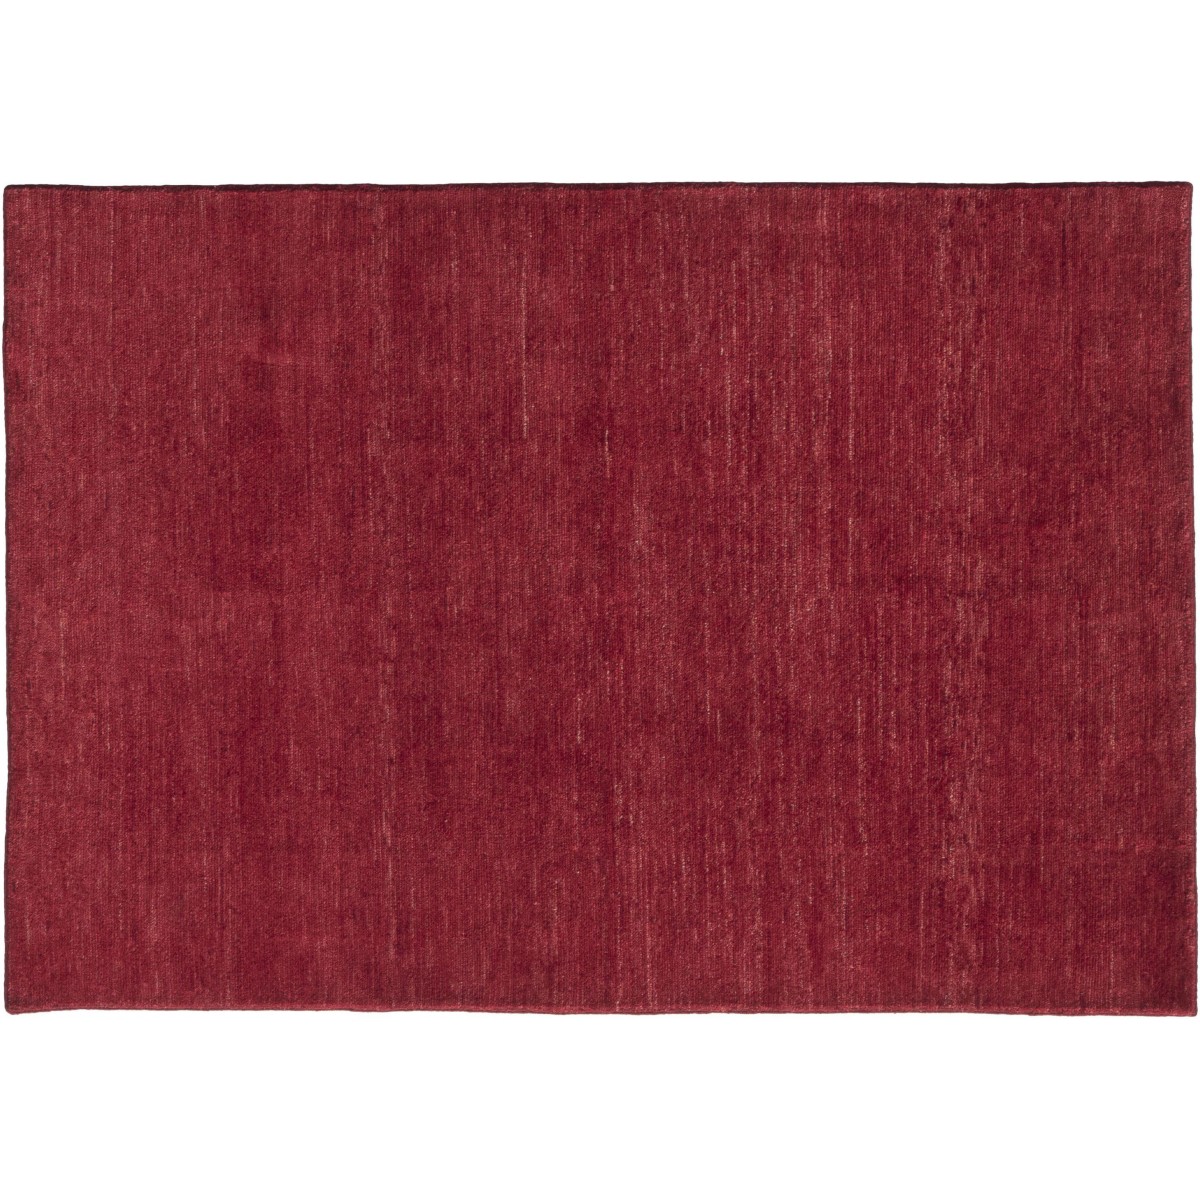 170x240cm - scarlet - tapis Persian Colors